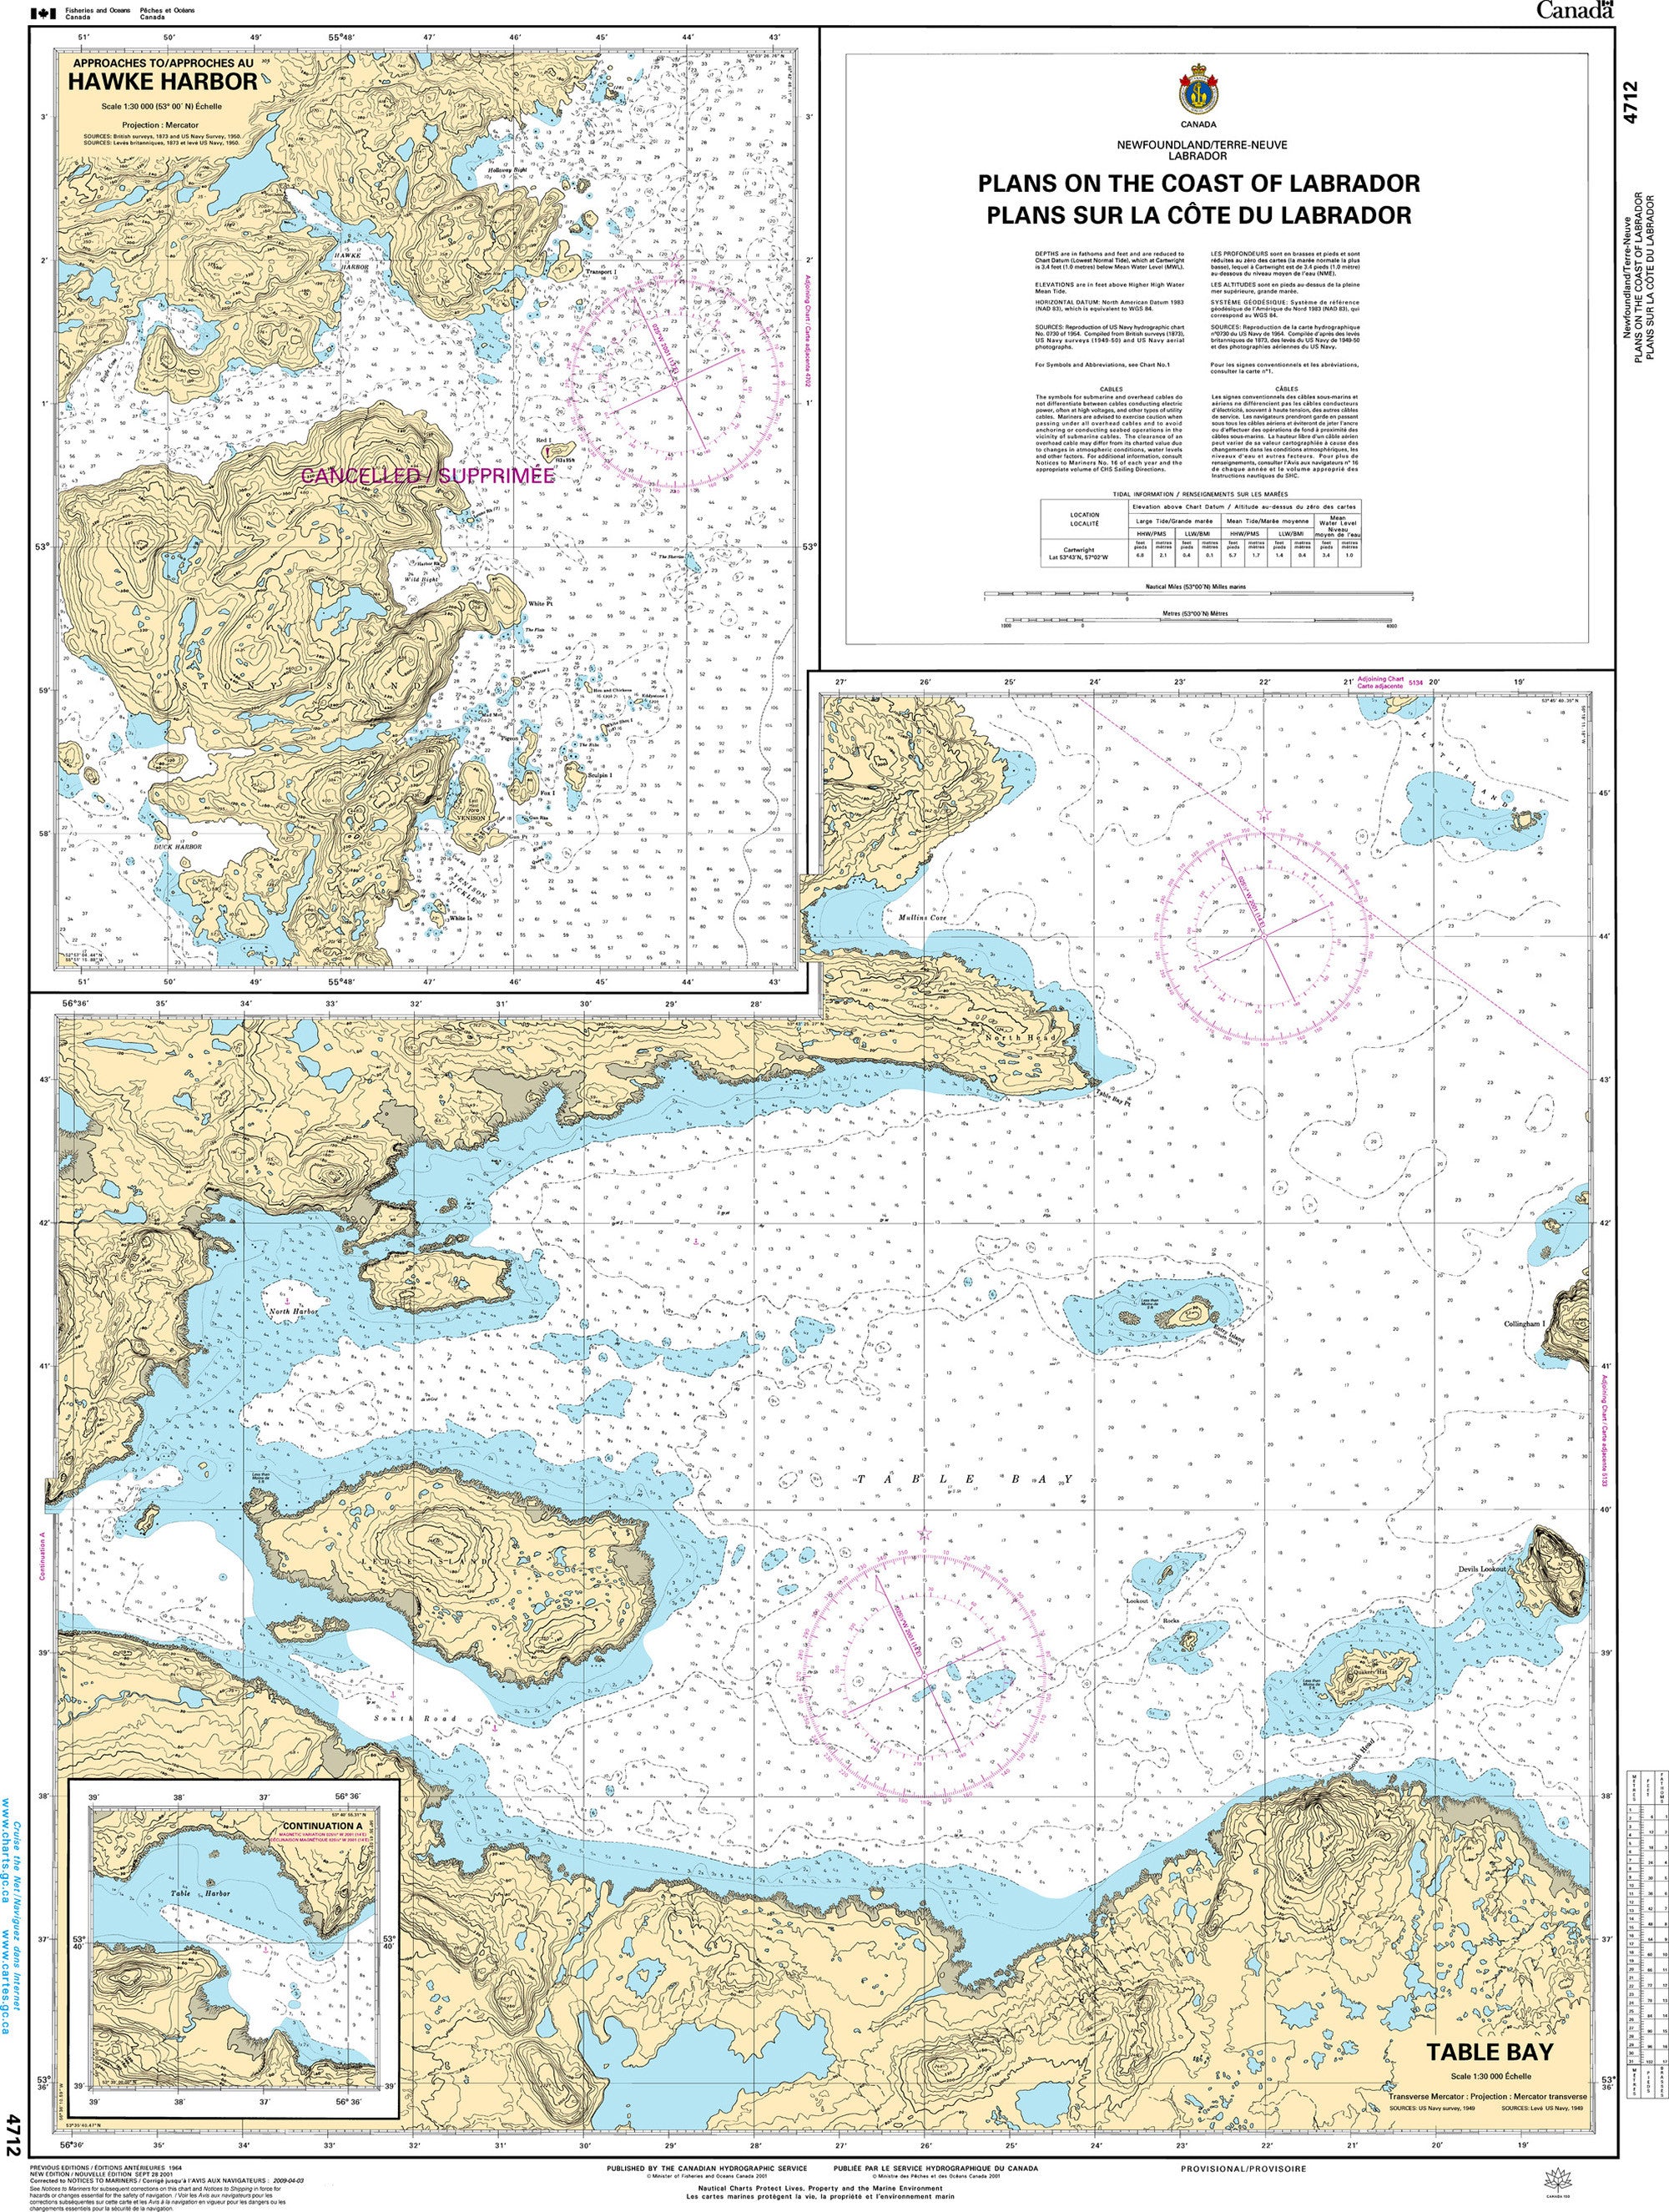 Canadian Hydrographic Service Nautical Chart CHS4712: Plans on the Coast of Labrador/Plans sur la côte du Labrador